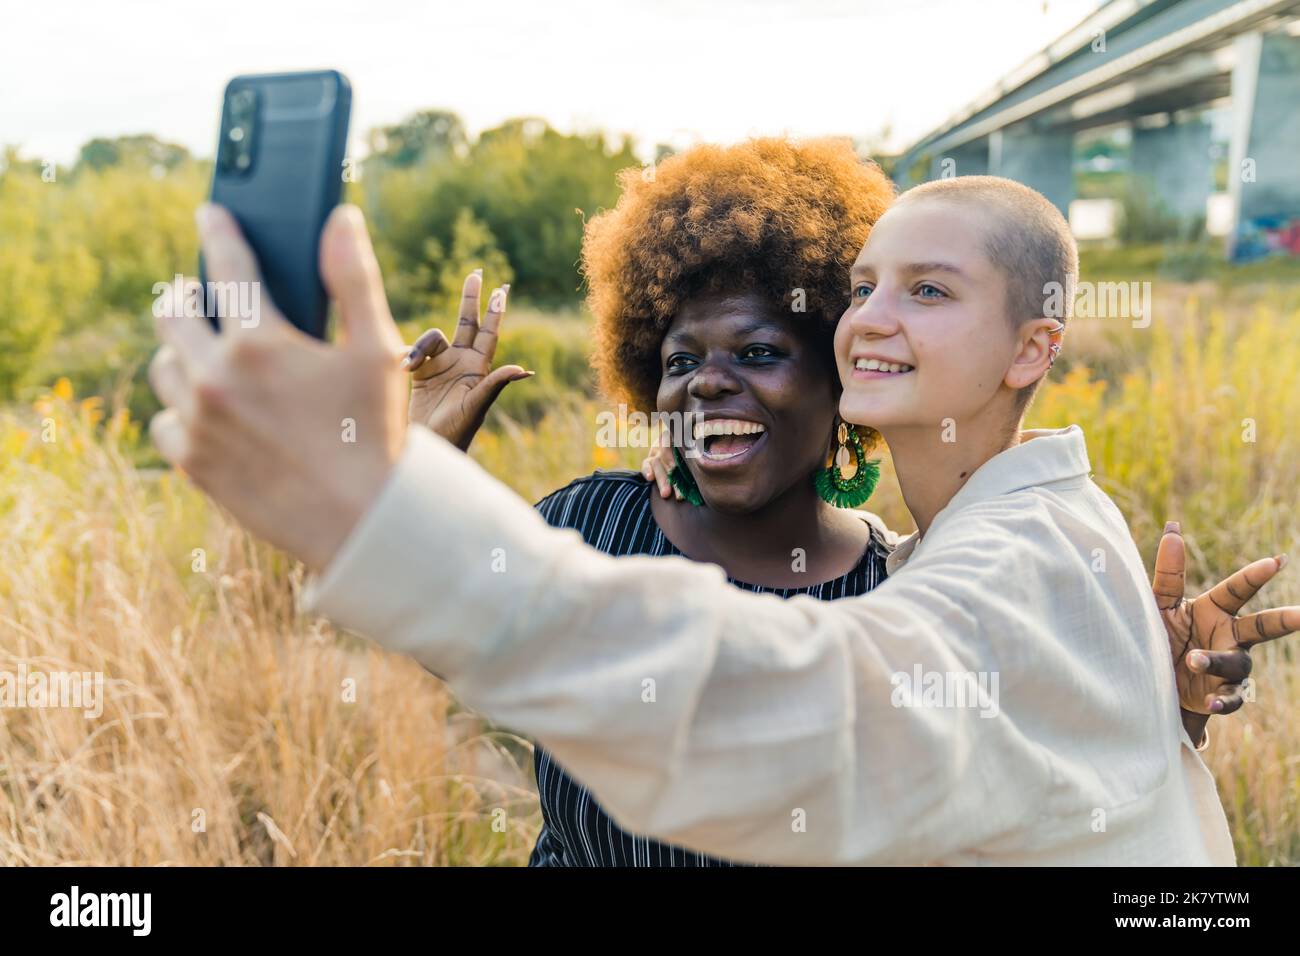 Modernes Freundschaftskonzept. Smiley schwarze Frau in ihrem späten 20s mit roter Afro-Frisur posiert für ein Selfie, das von ihren kahlköpfigen queeren kaukasischen Freunden aufgenommen wurde. Außenaufnahme. Hochwertige Fotos Stockfoto